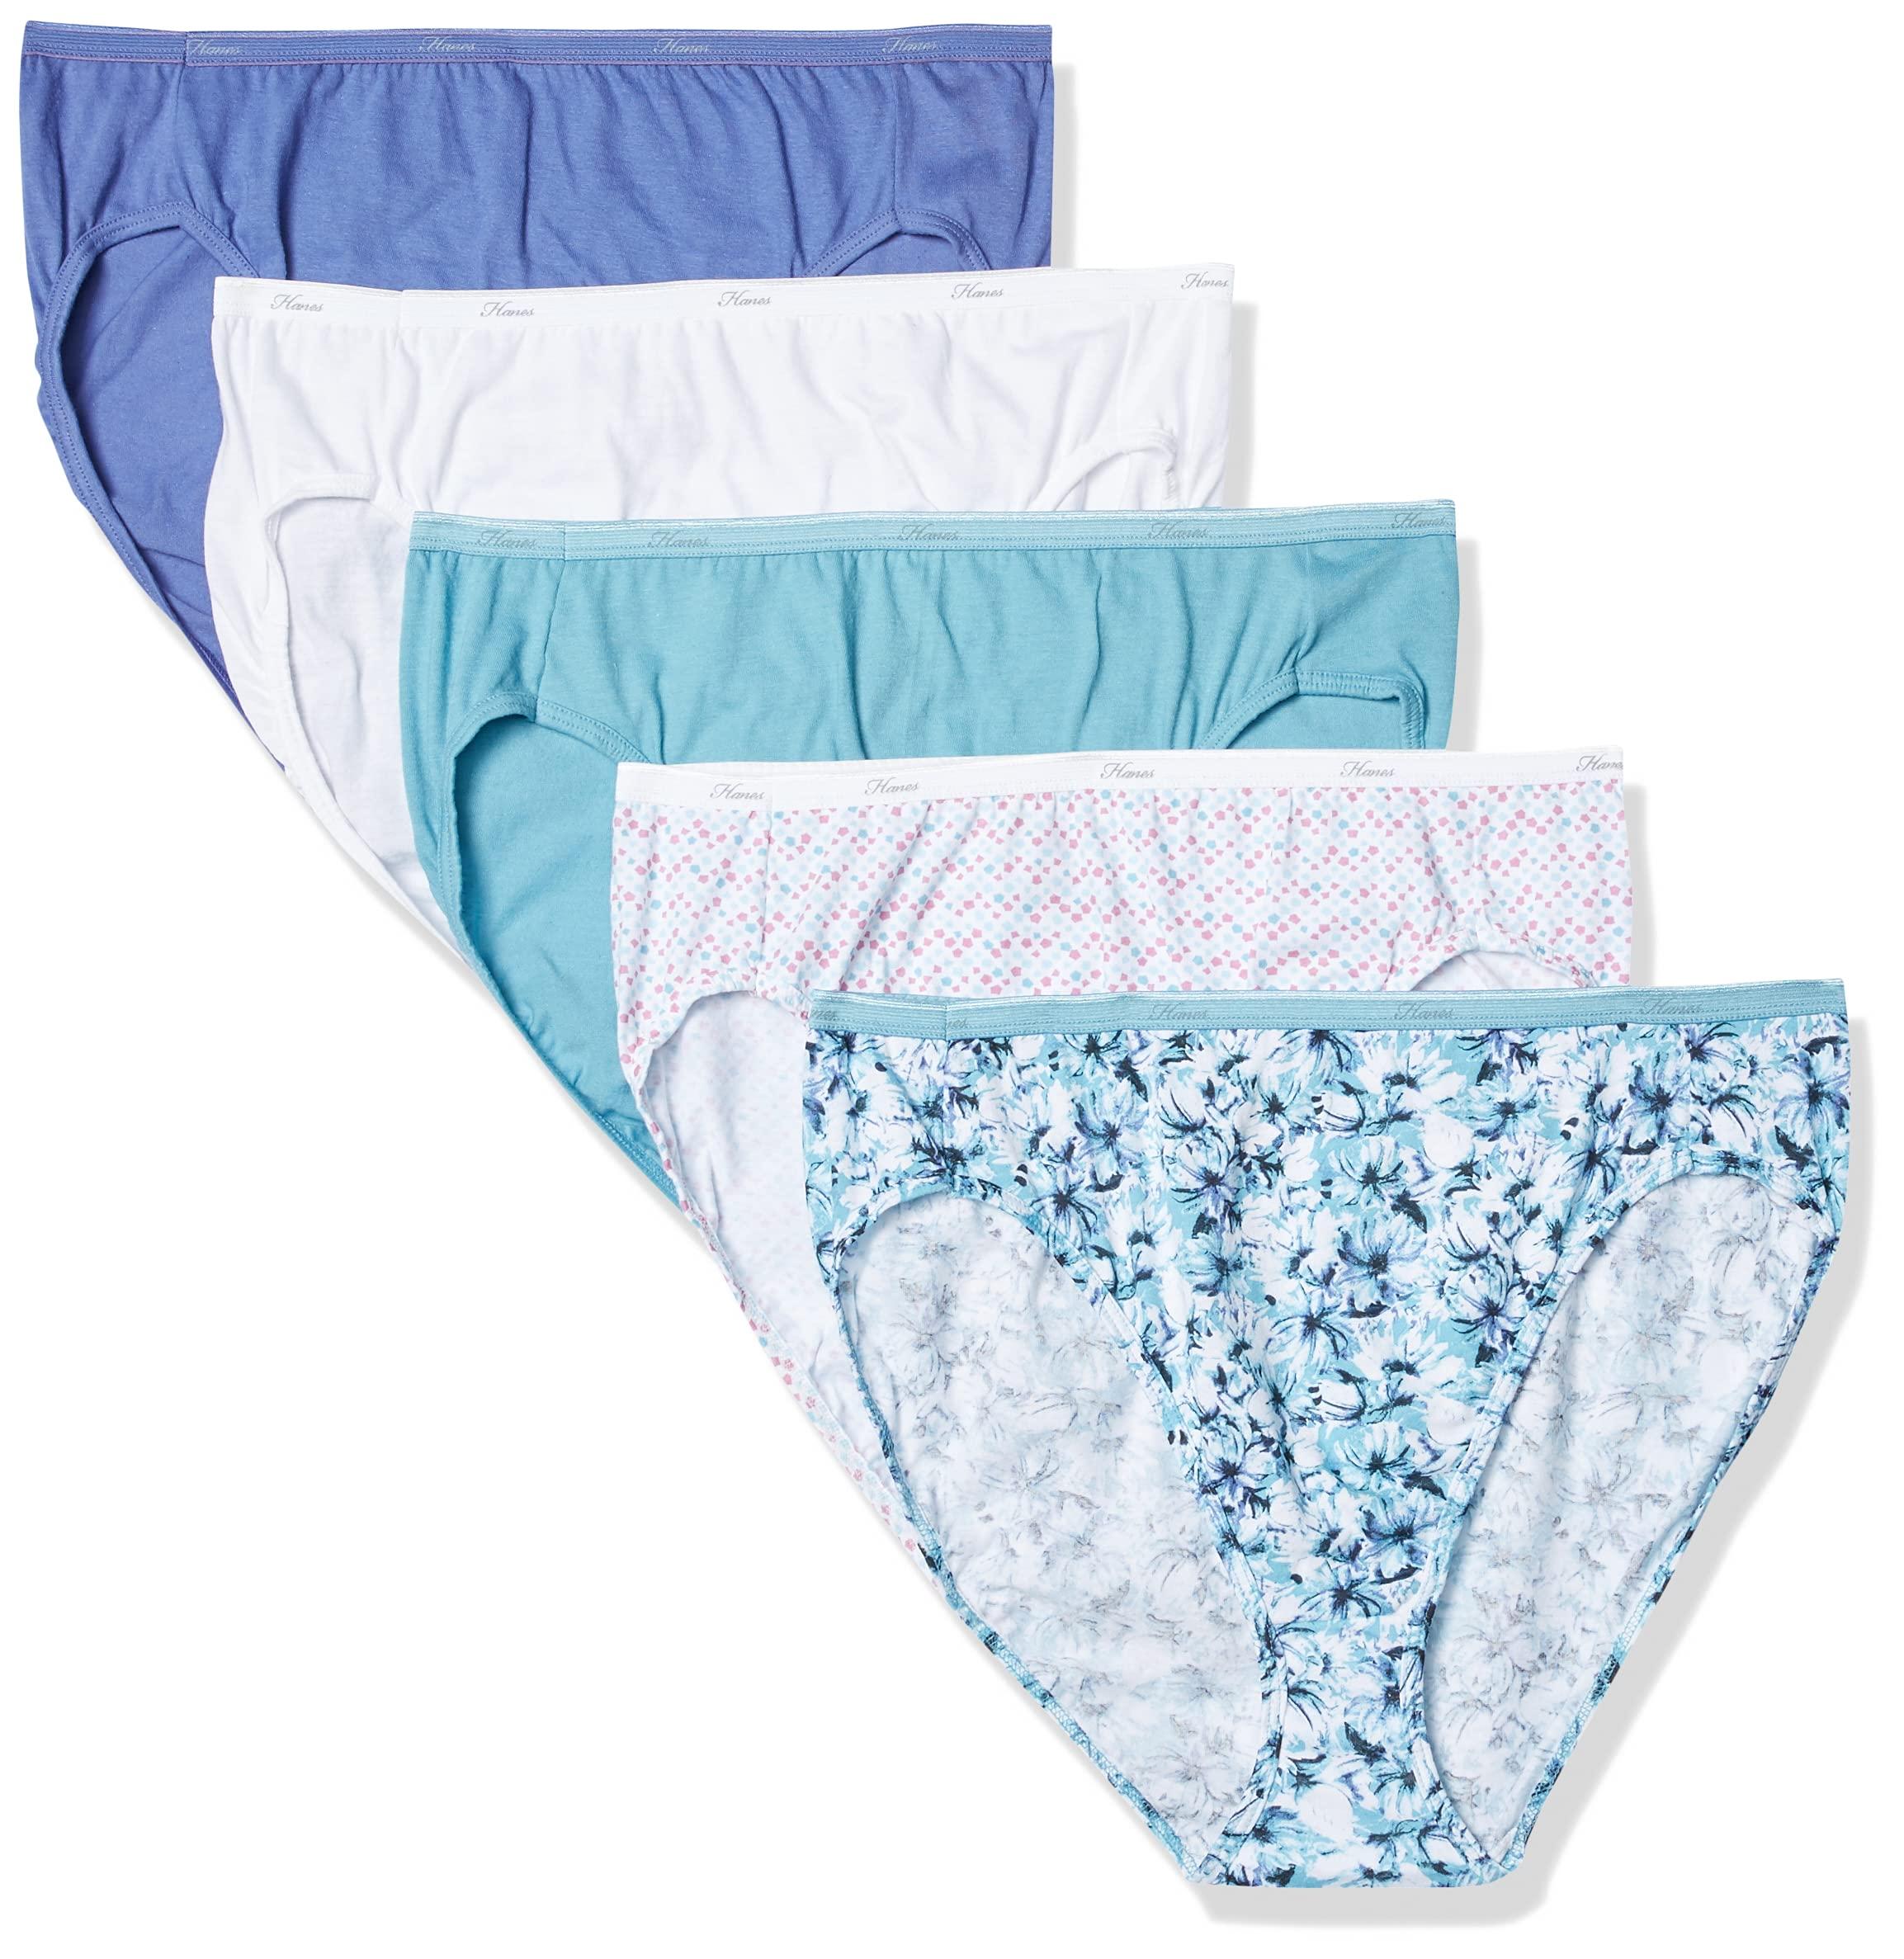 5 Pairs Rio Womens Hi Cut Cotton Briefs Undies Underwear Blue White Pack 